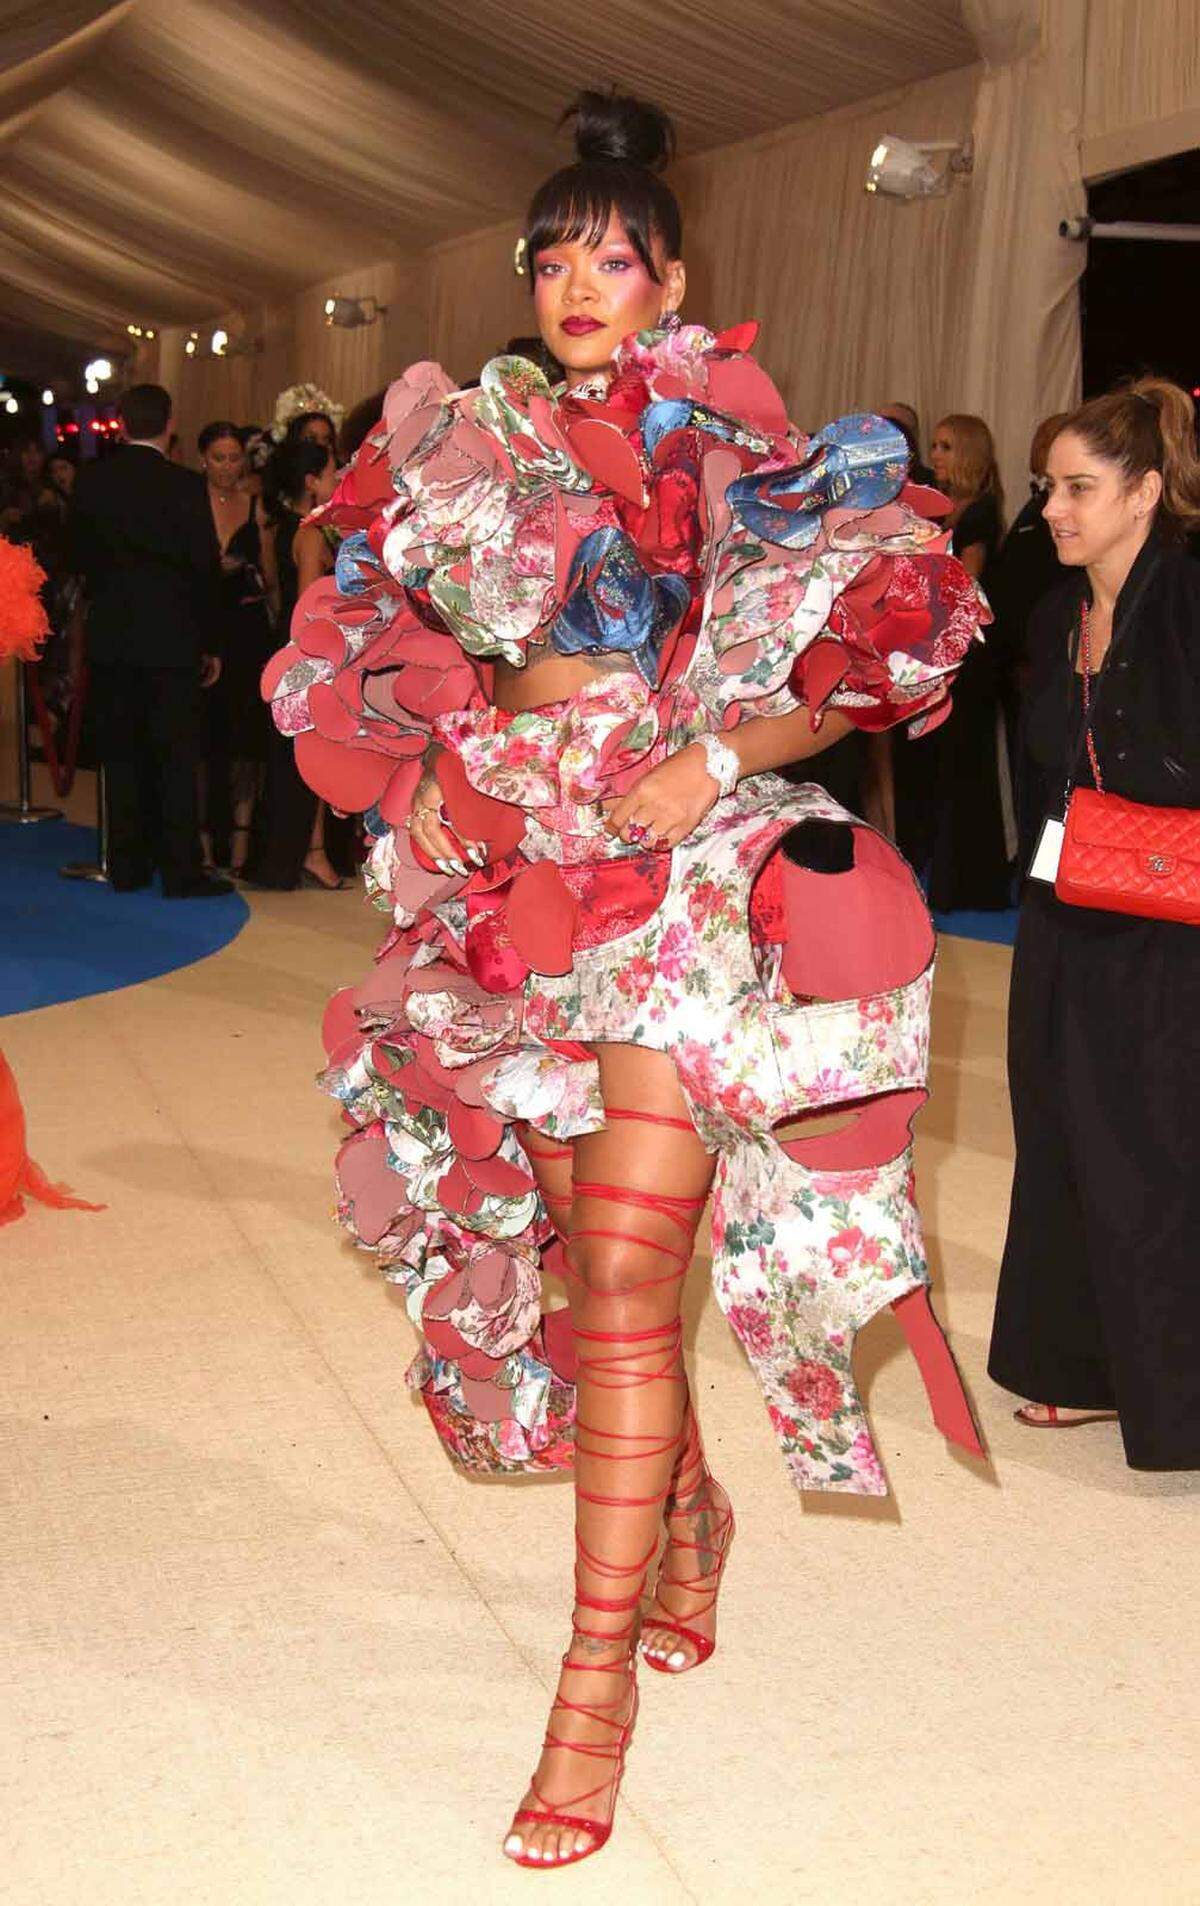 Ein Schmetterling auf einer Blumenwiese oder doch eine aufwendige Geschenkverpackung? Der Look von Rihanna brachte viele Assoziationen hervor.